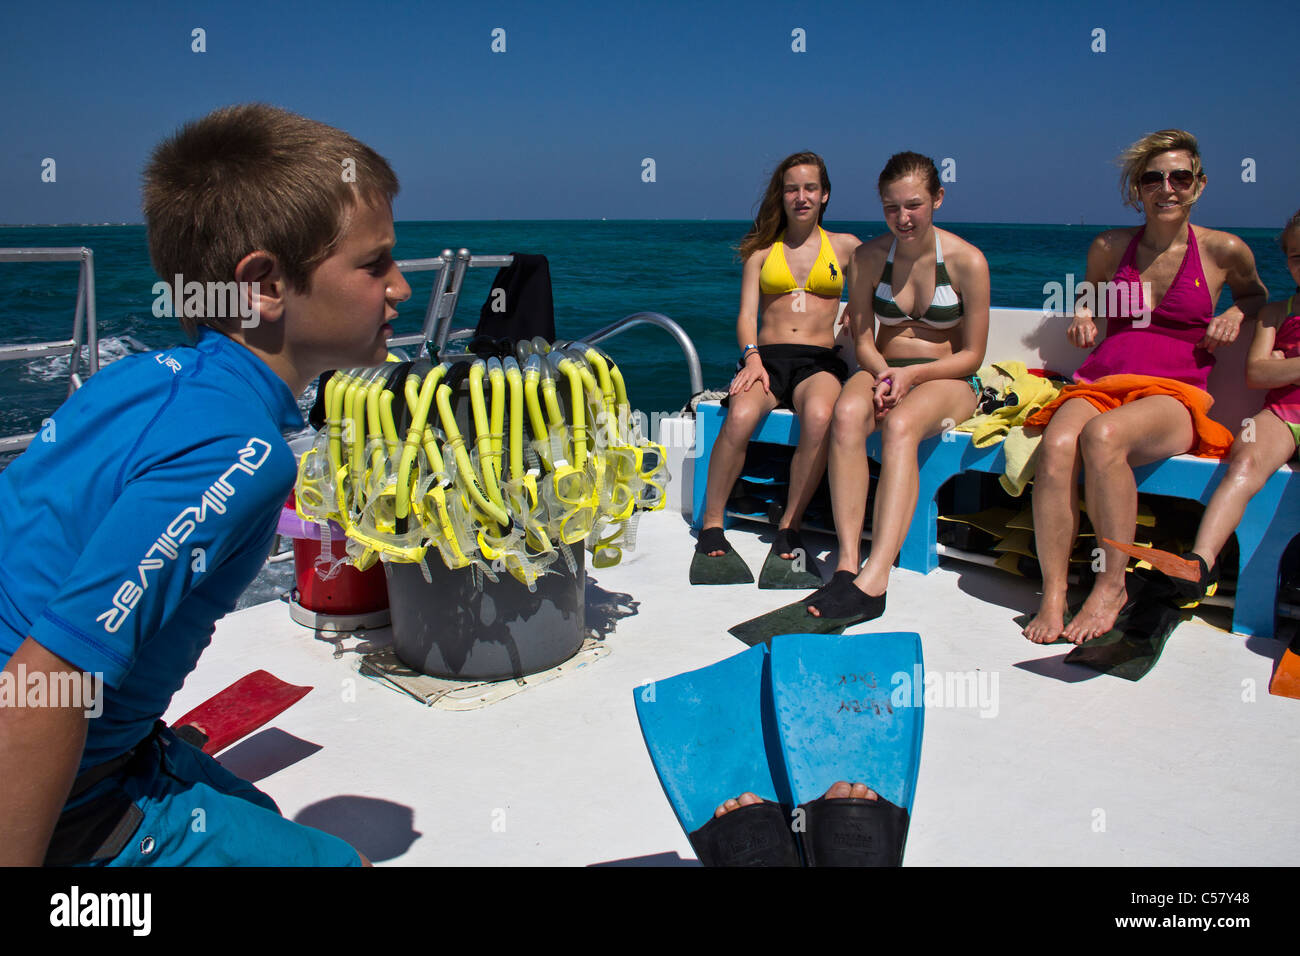 Le persone interagiscono con i trigoni a Stingray City, Isole Cayman Foto Stock